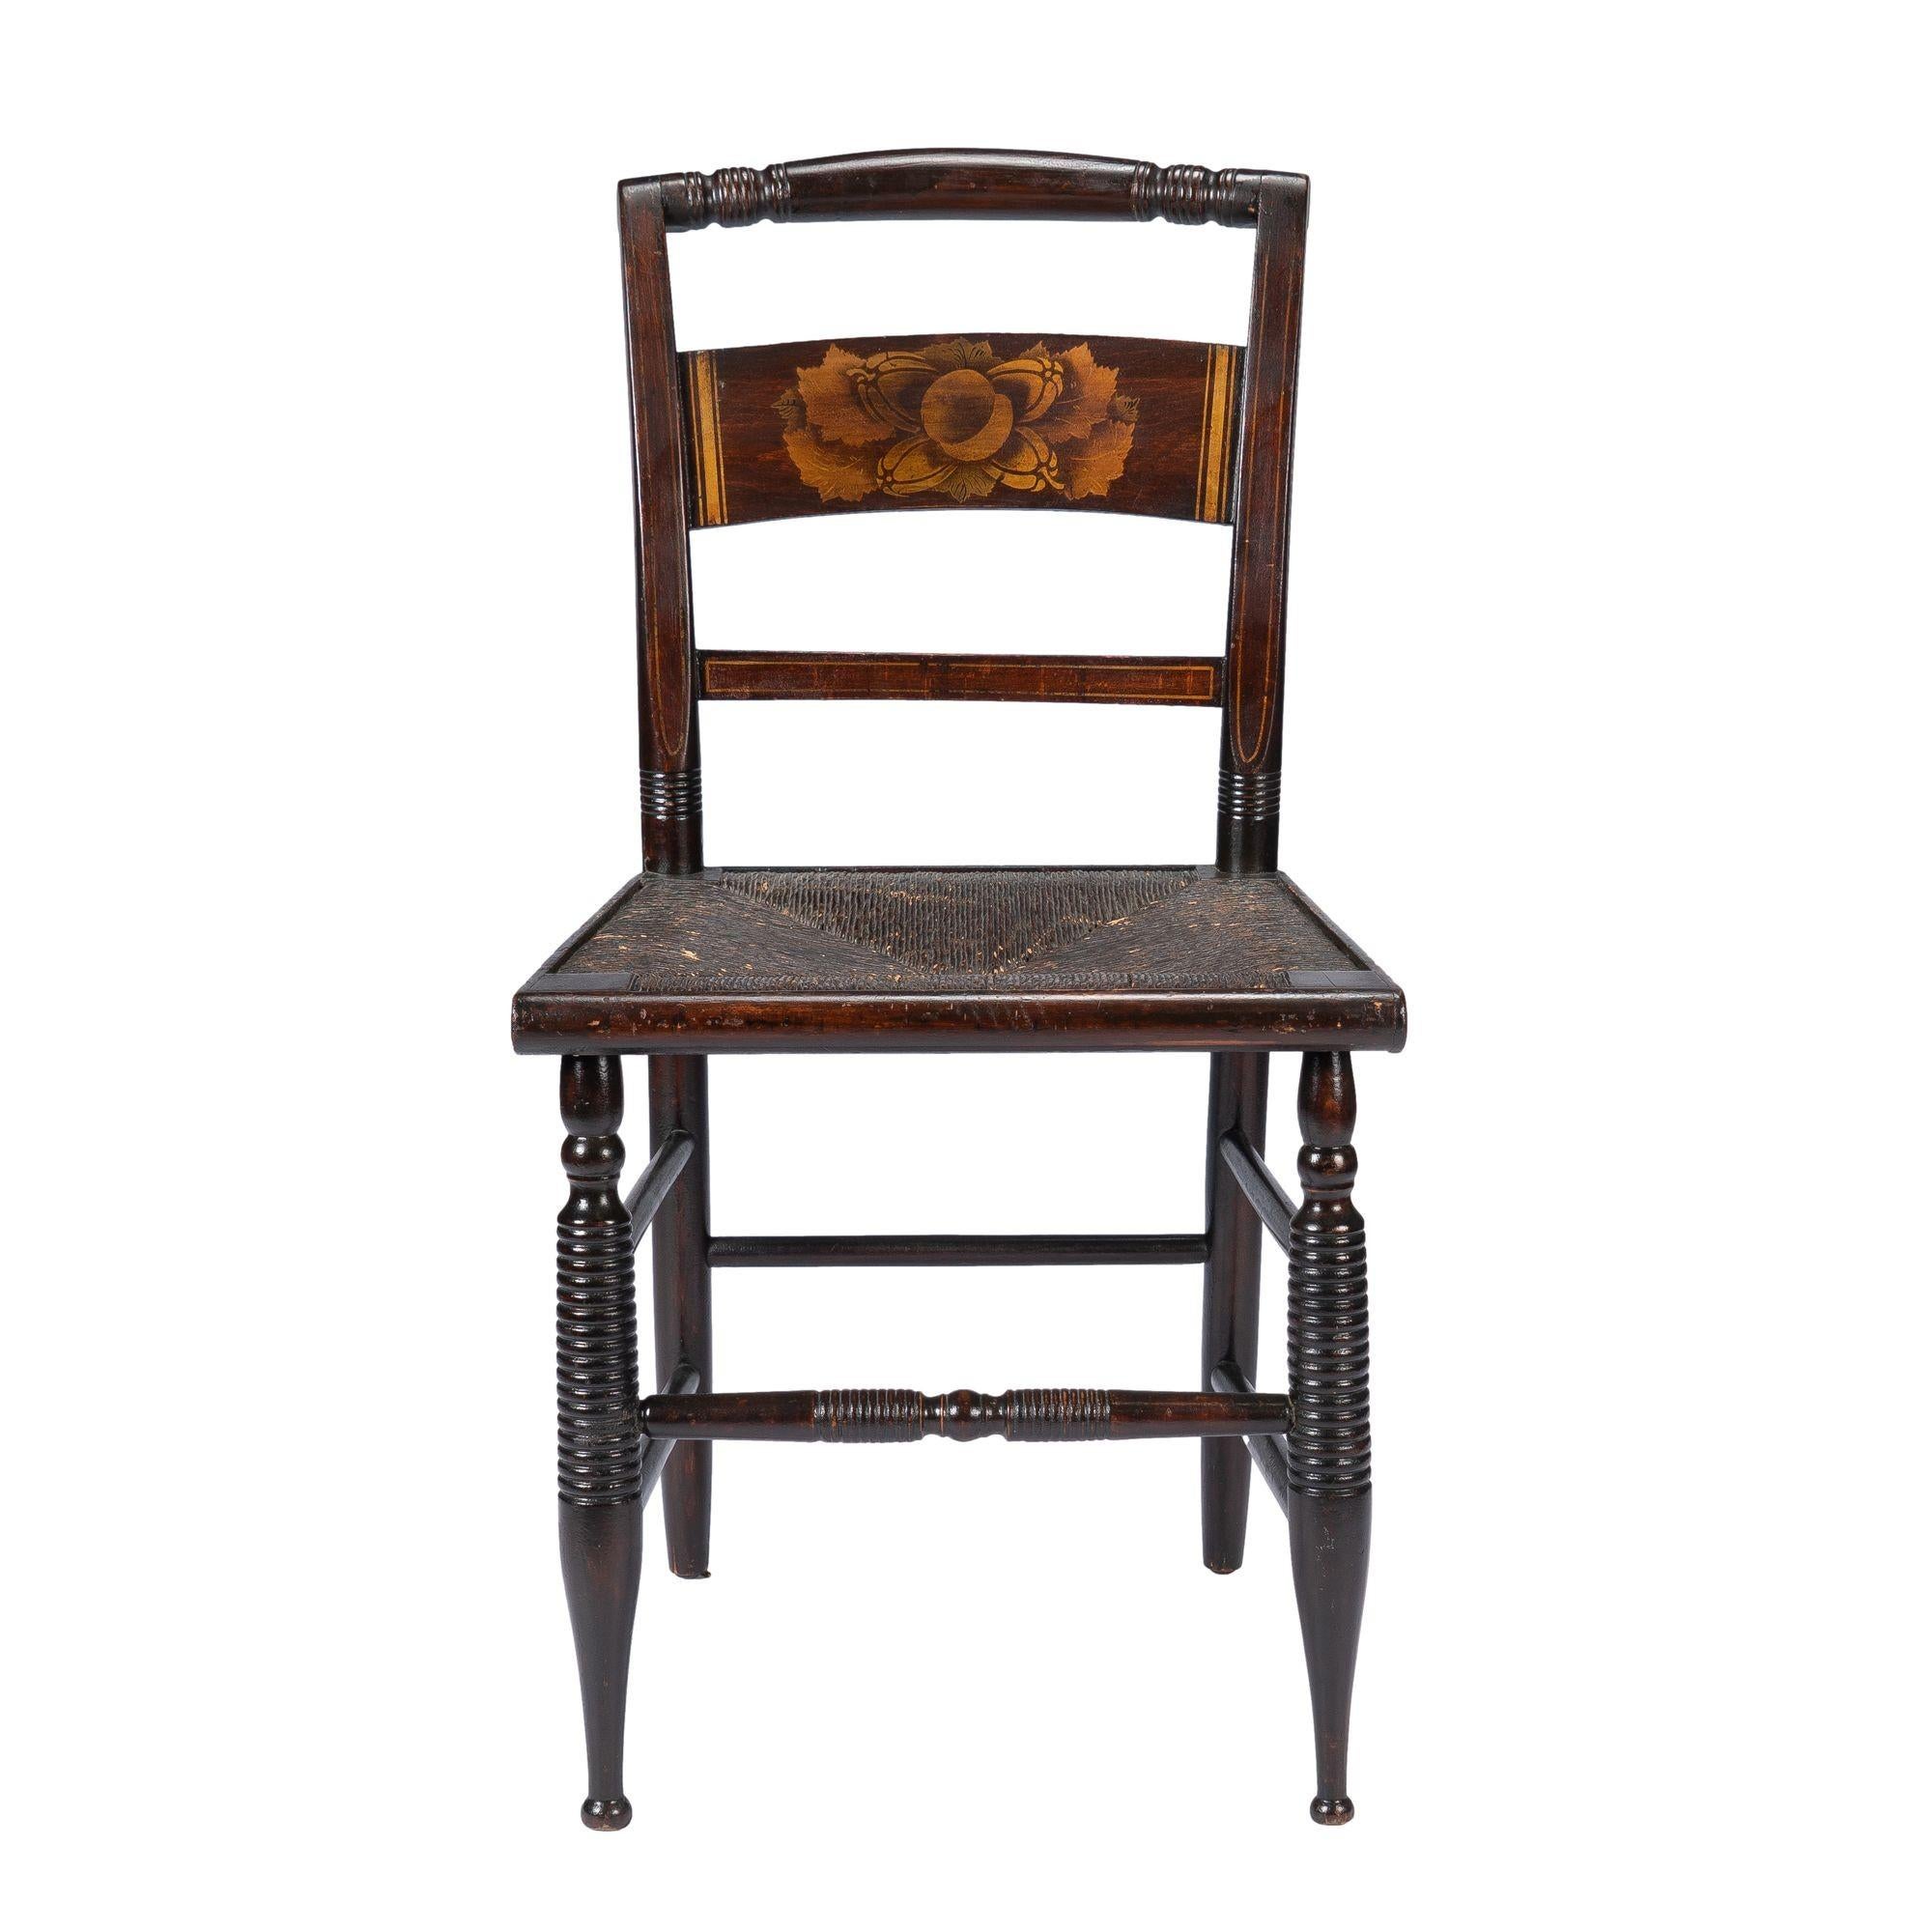 Amerikanischer Sheraton-Stuhl mit Schablonenmalerei und Bronzepulver, Hitchcock-Typ, Binsenstuhl.

Amerikaner, Connecticut Valley, um 1820.

Abmessungen: 17-1/2